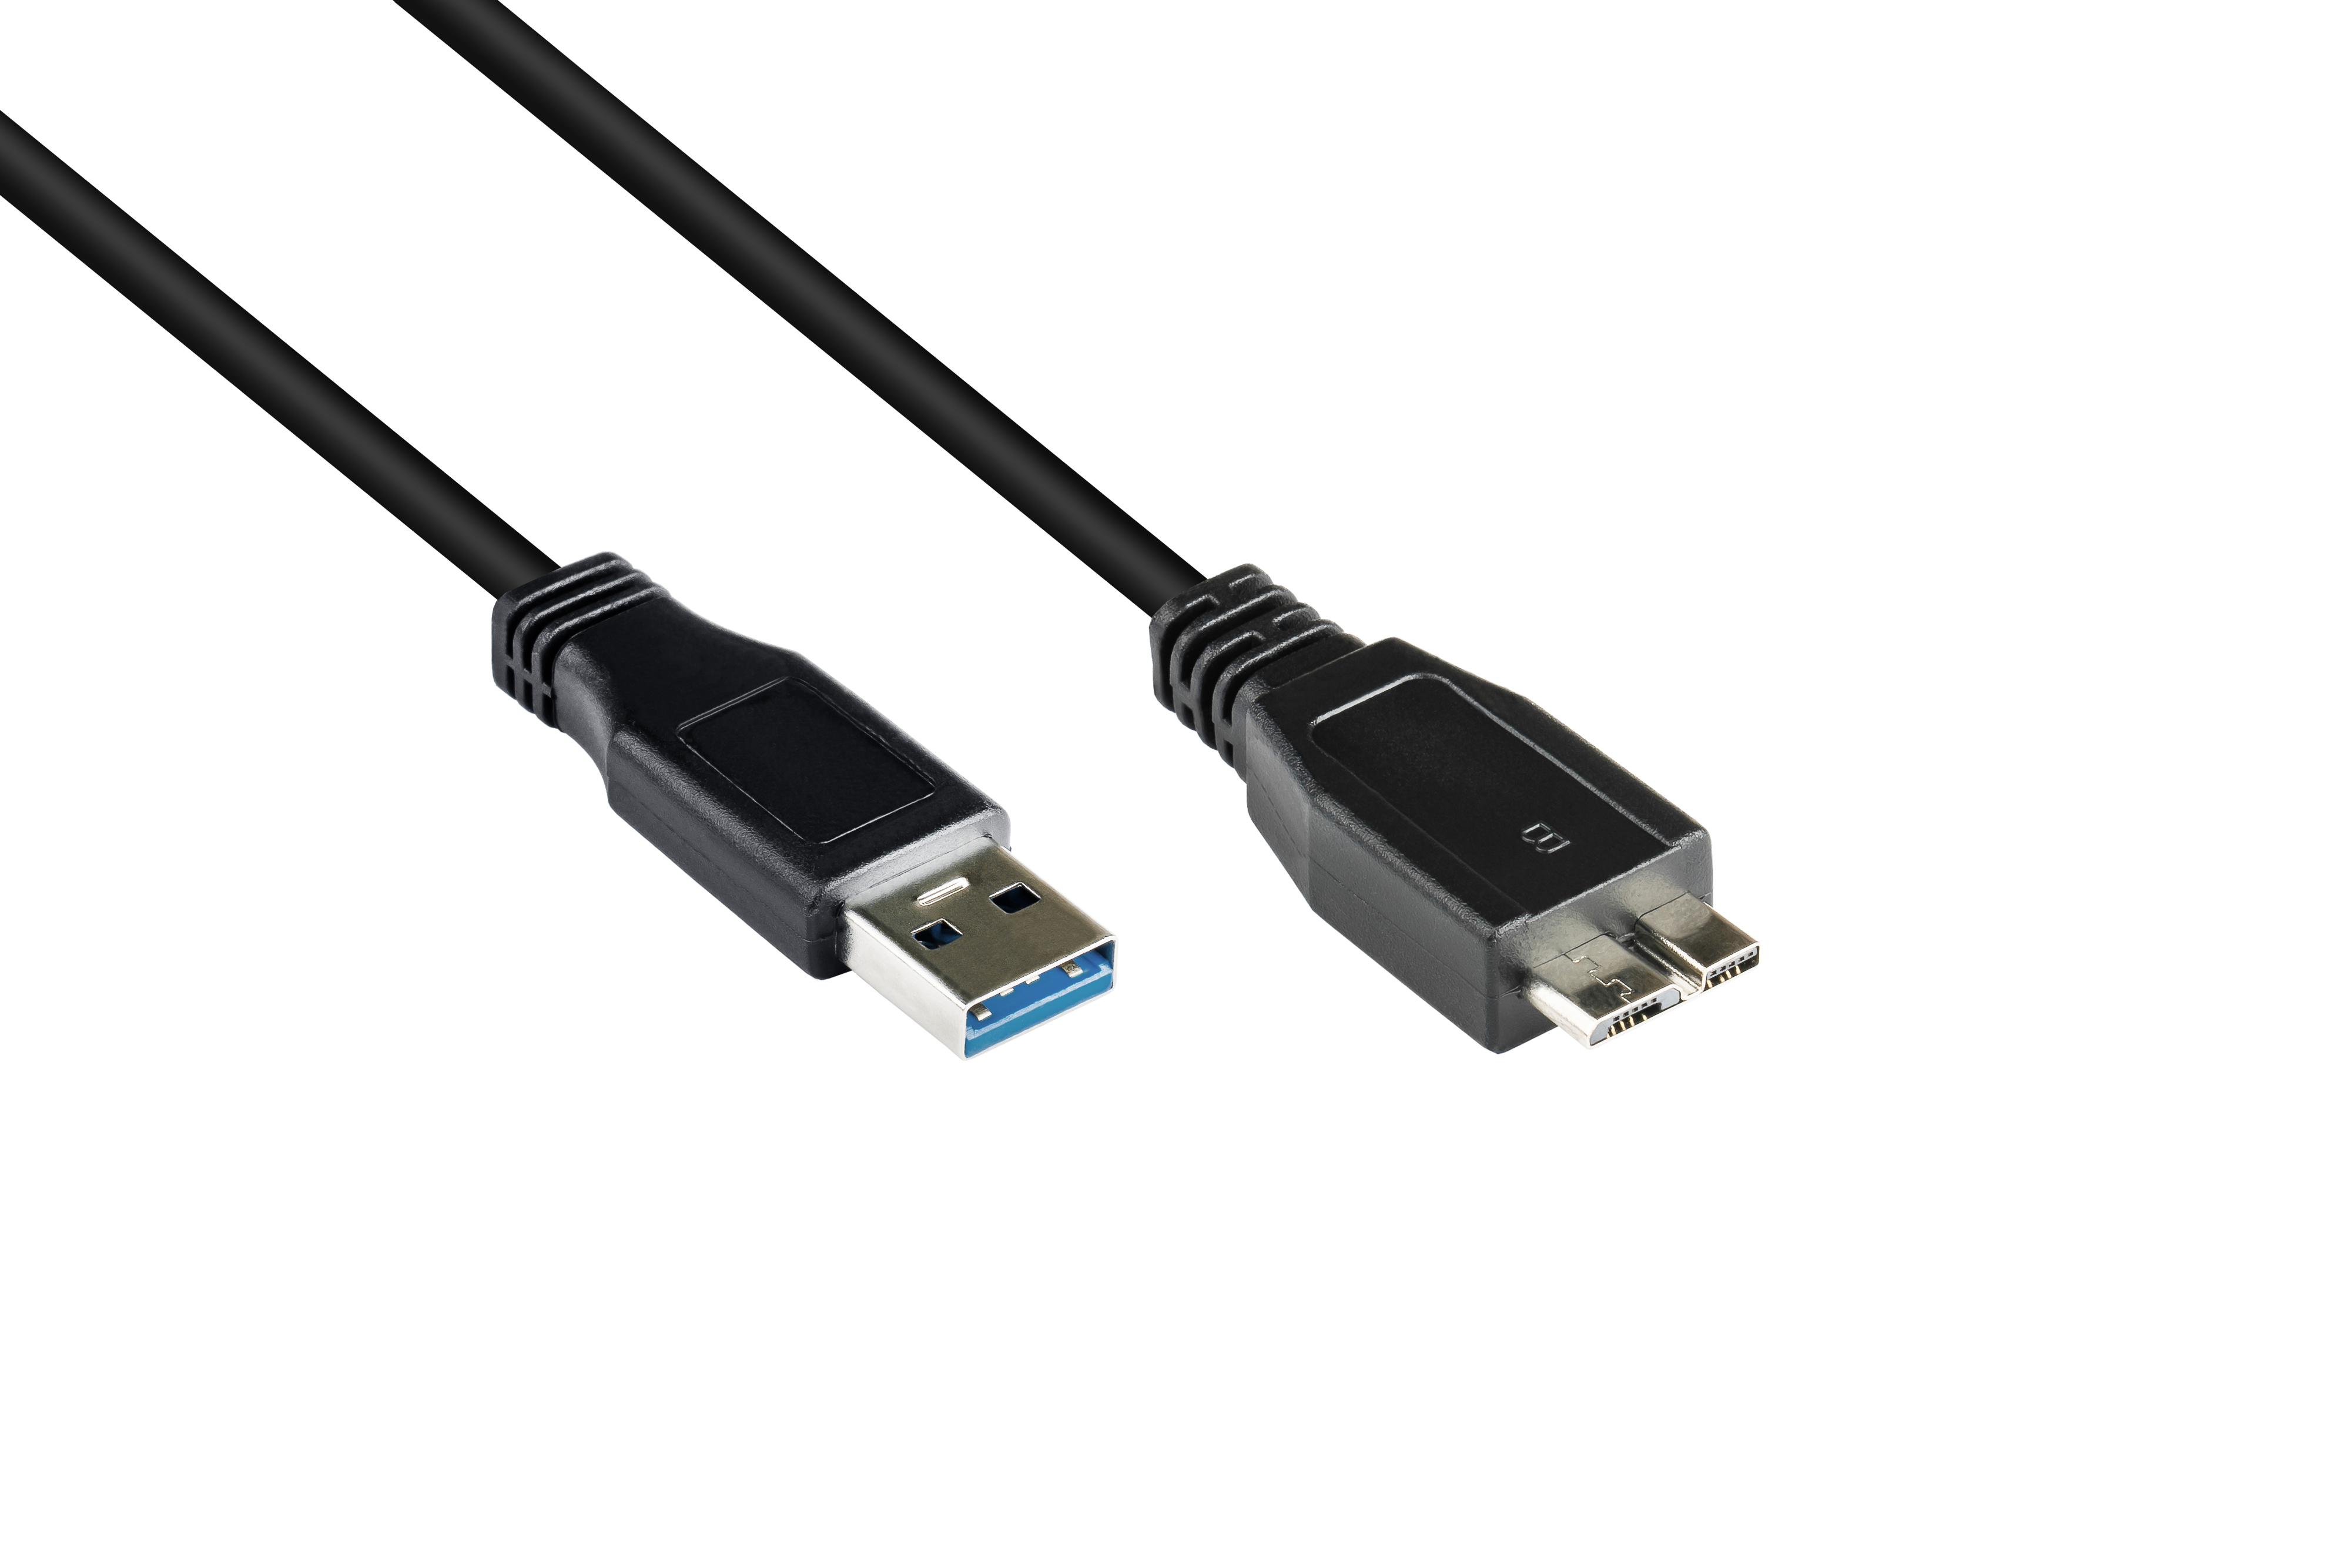 Anschlusskabel GOOD CONNECTIONS an 3.0 B, USB A Stecker Micro schwarz Stecker